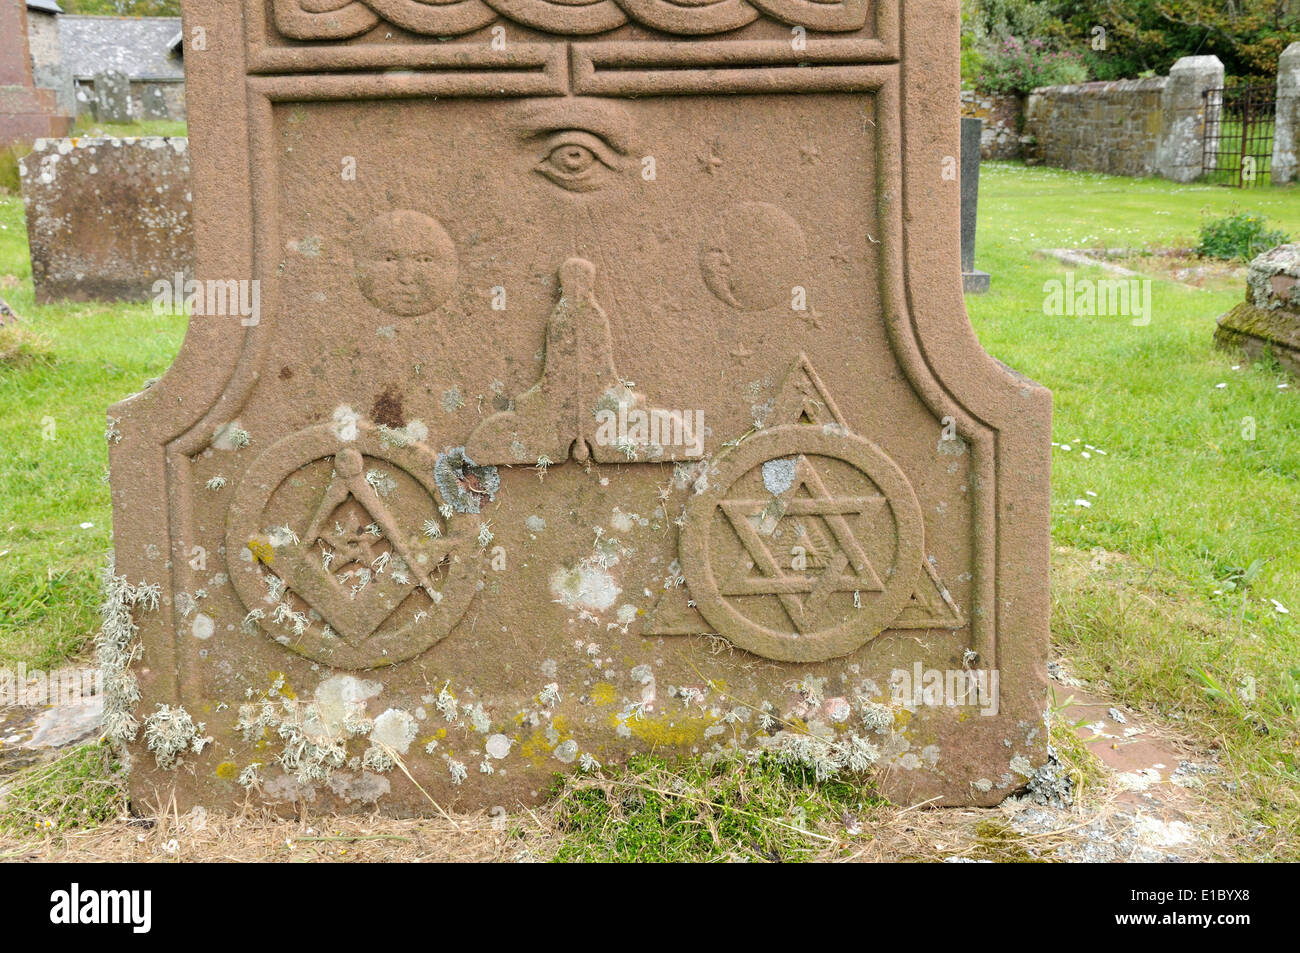 Simboli massonico sulla base di una croce celtica pietra tombale St Briget chiesa St Brides Pembrokeshire Wales Cymru REGNO UNITO GB Foto Stock